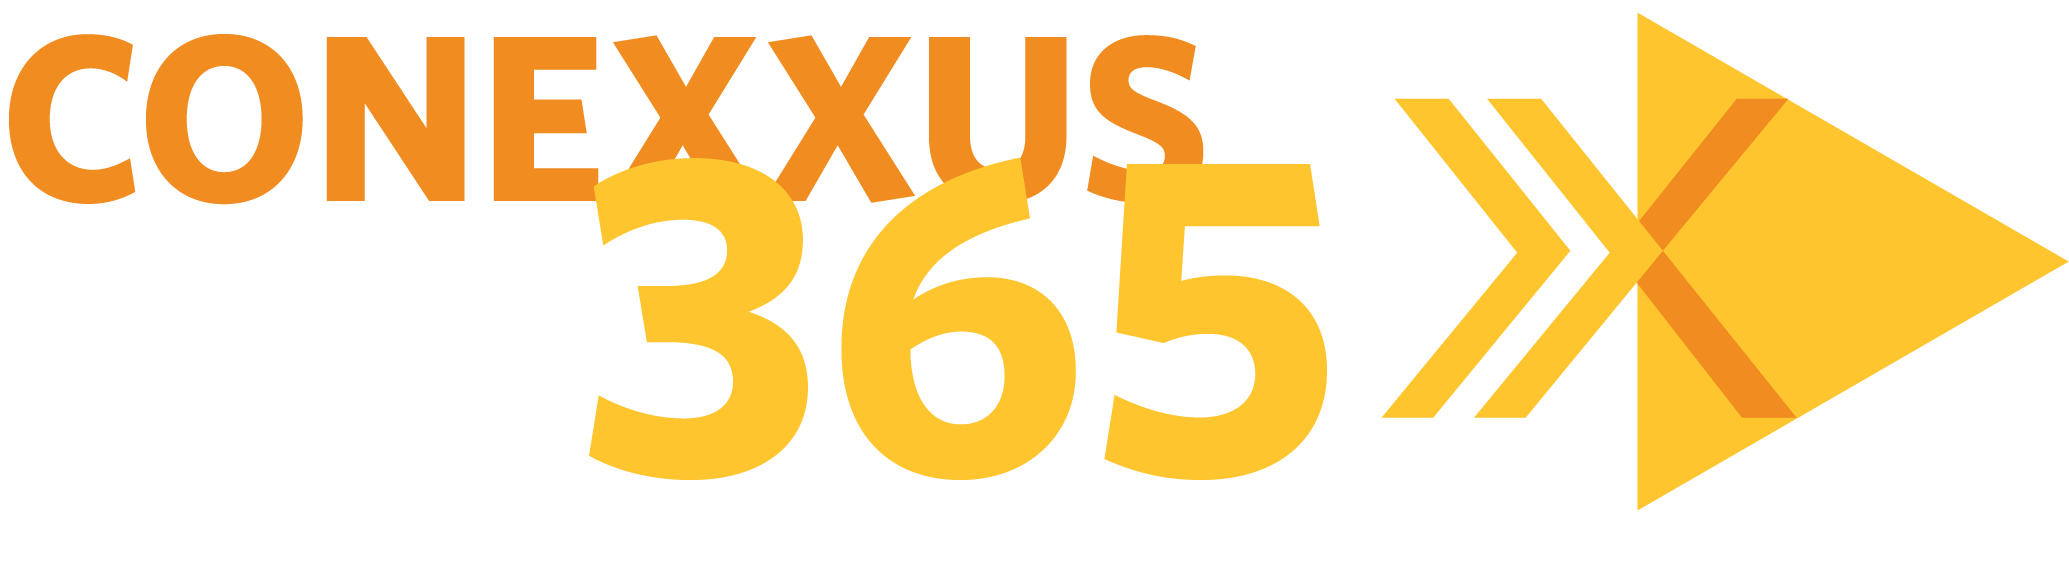 Conexxus365 Logo